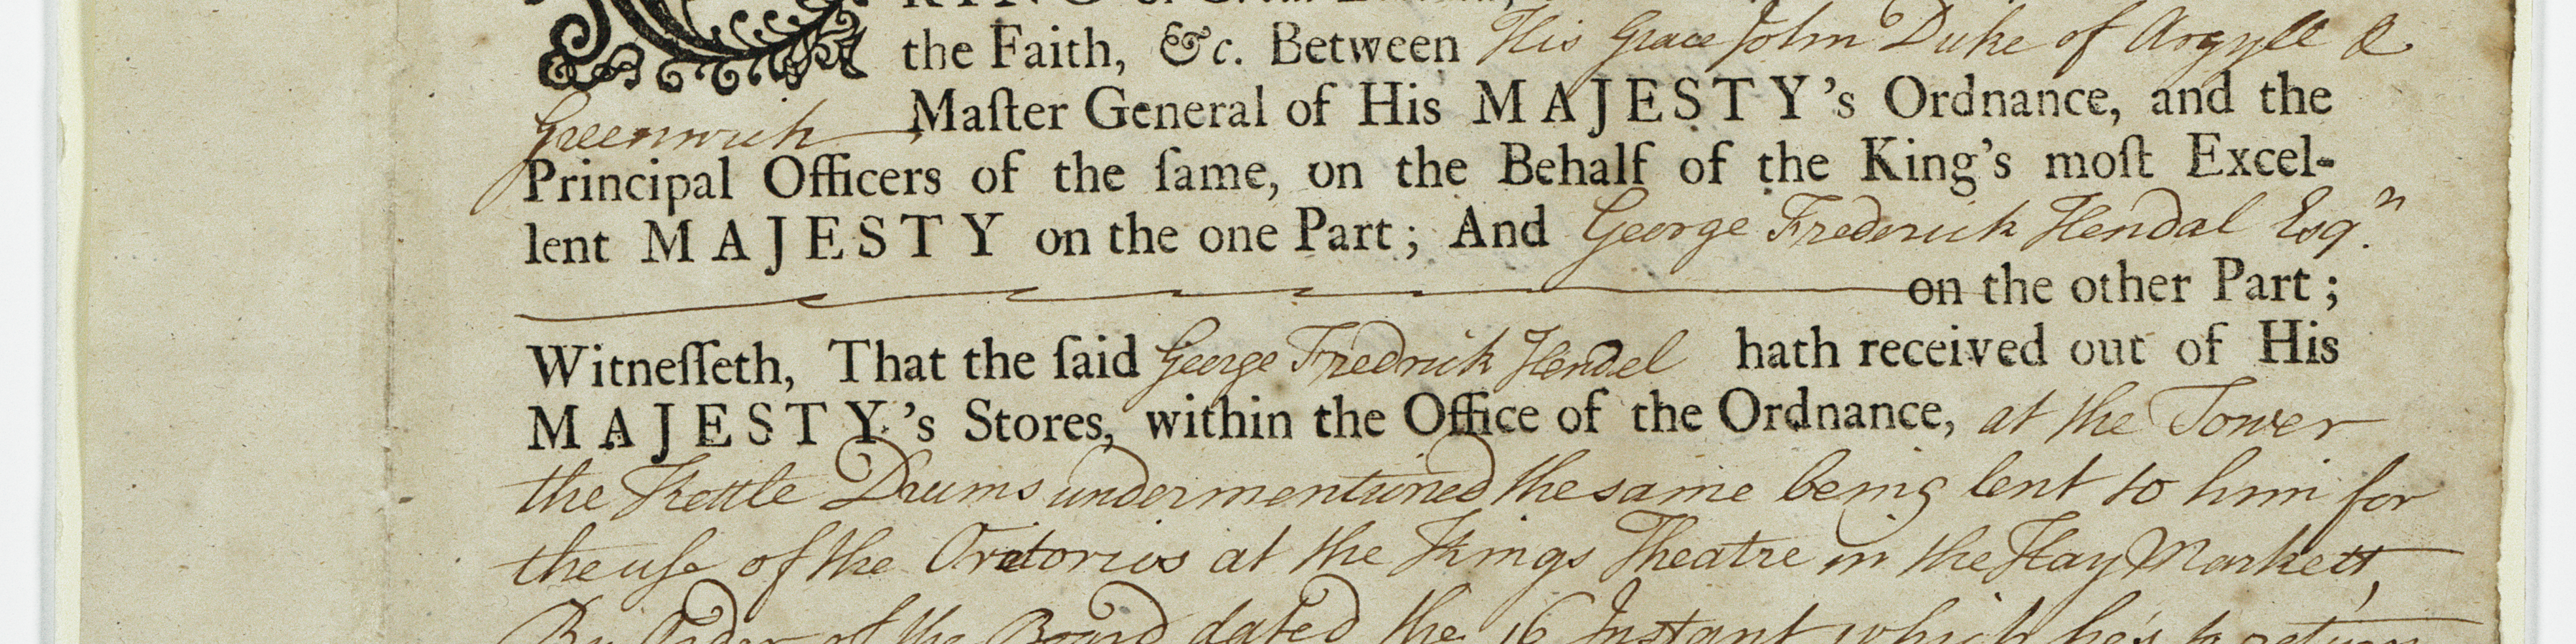 Receipt signed by Handel in 1739.